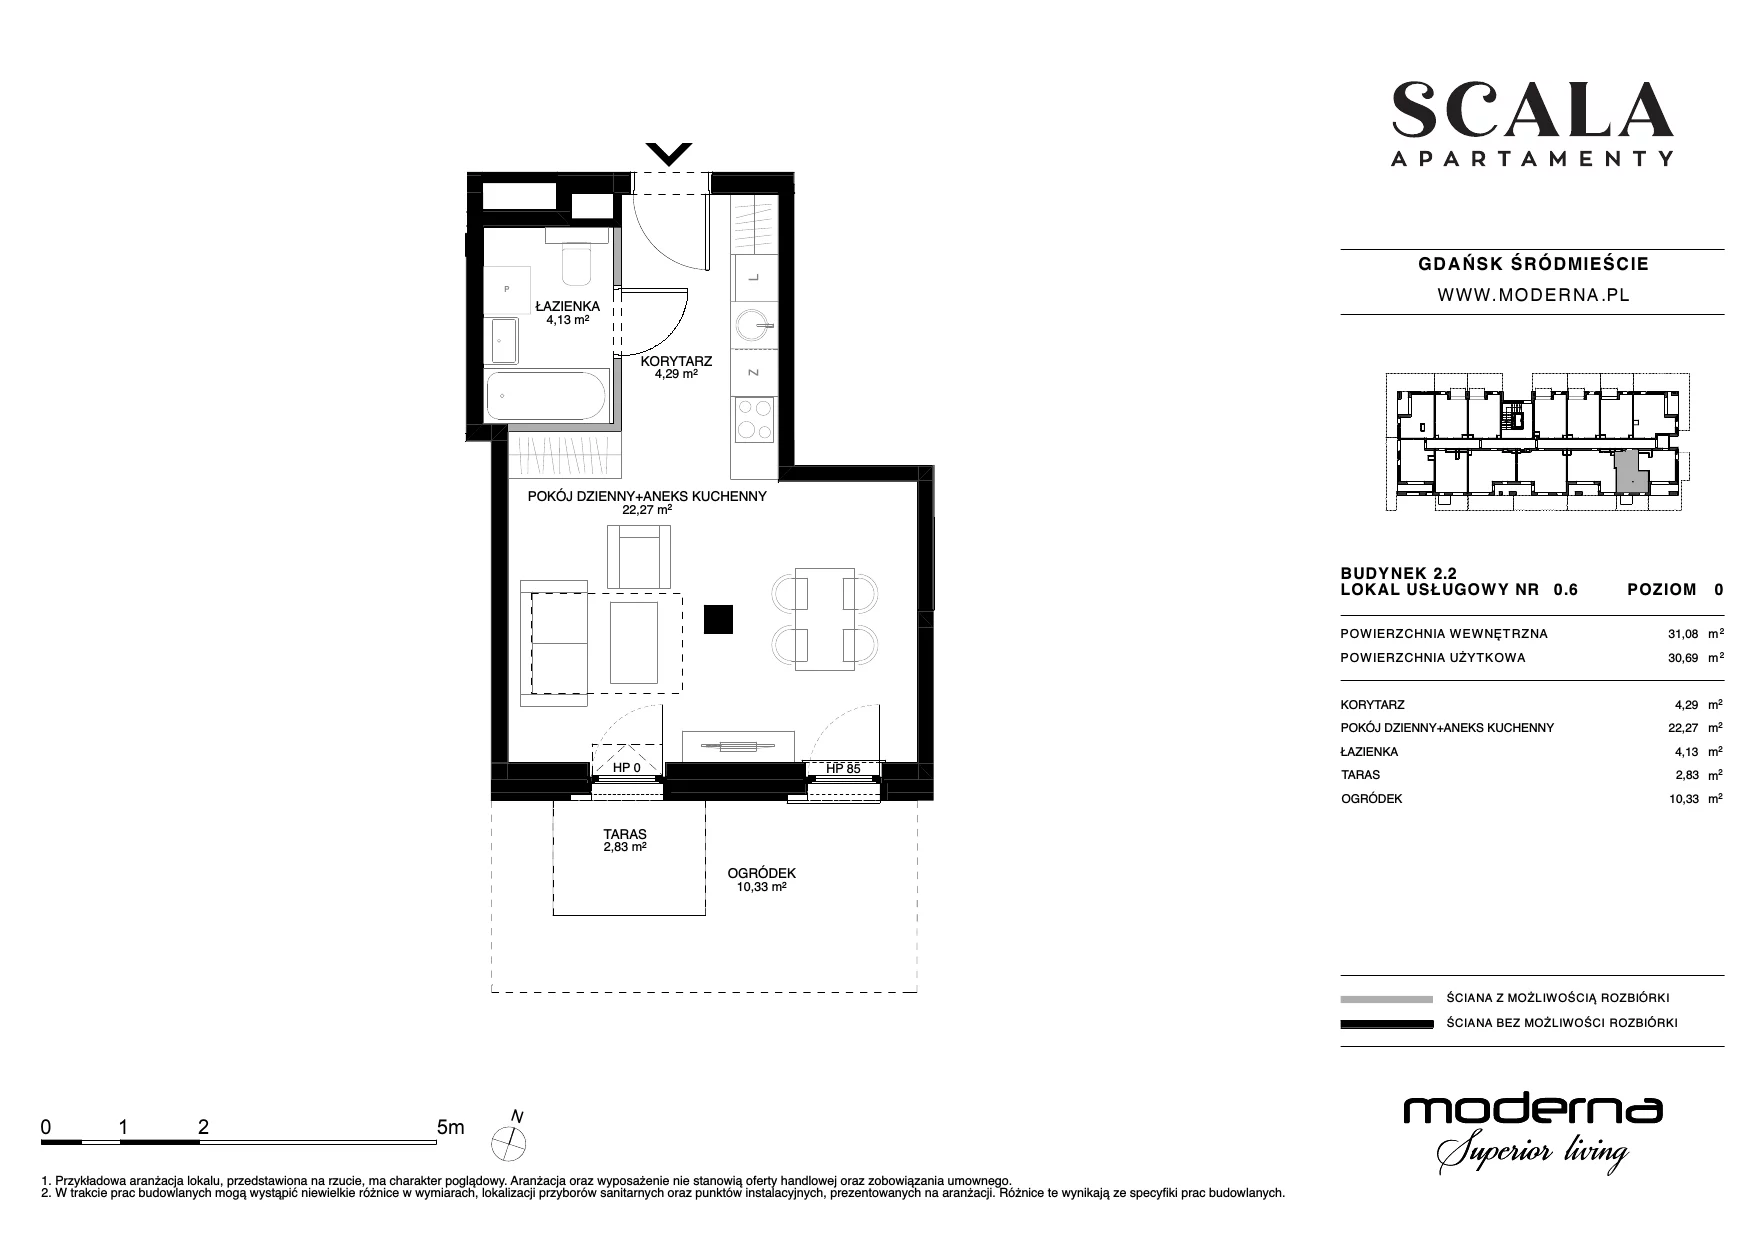 Apartament 30,82 m², parter, oferta nr 2.2-0.6., Scala, Gdańsk, Śródmieście, ul. Łąkowa 60C